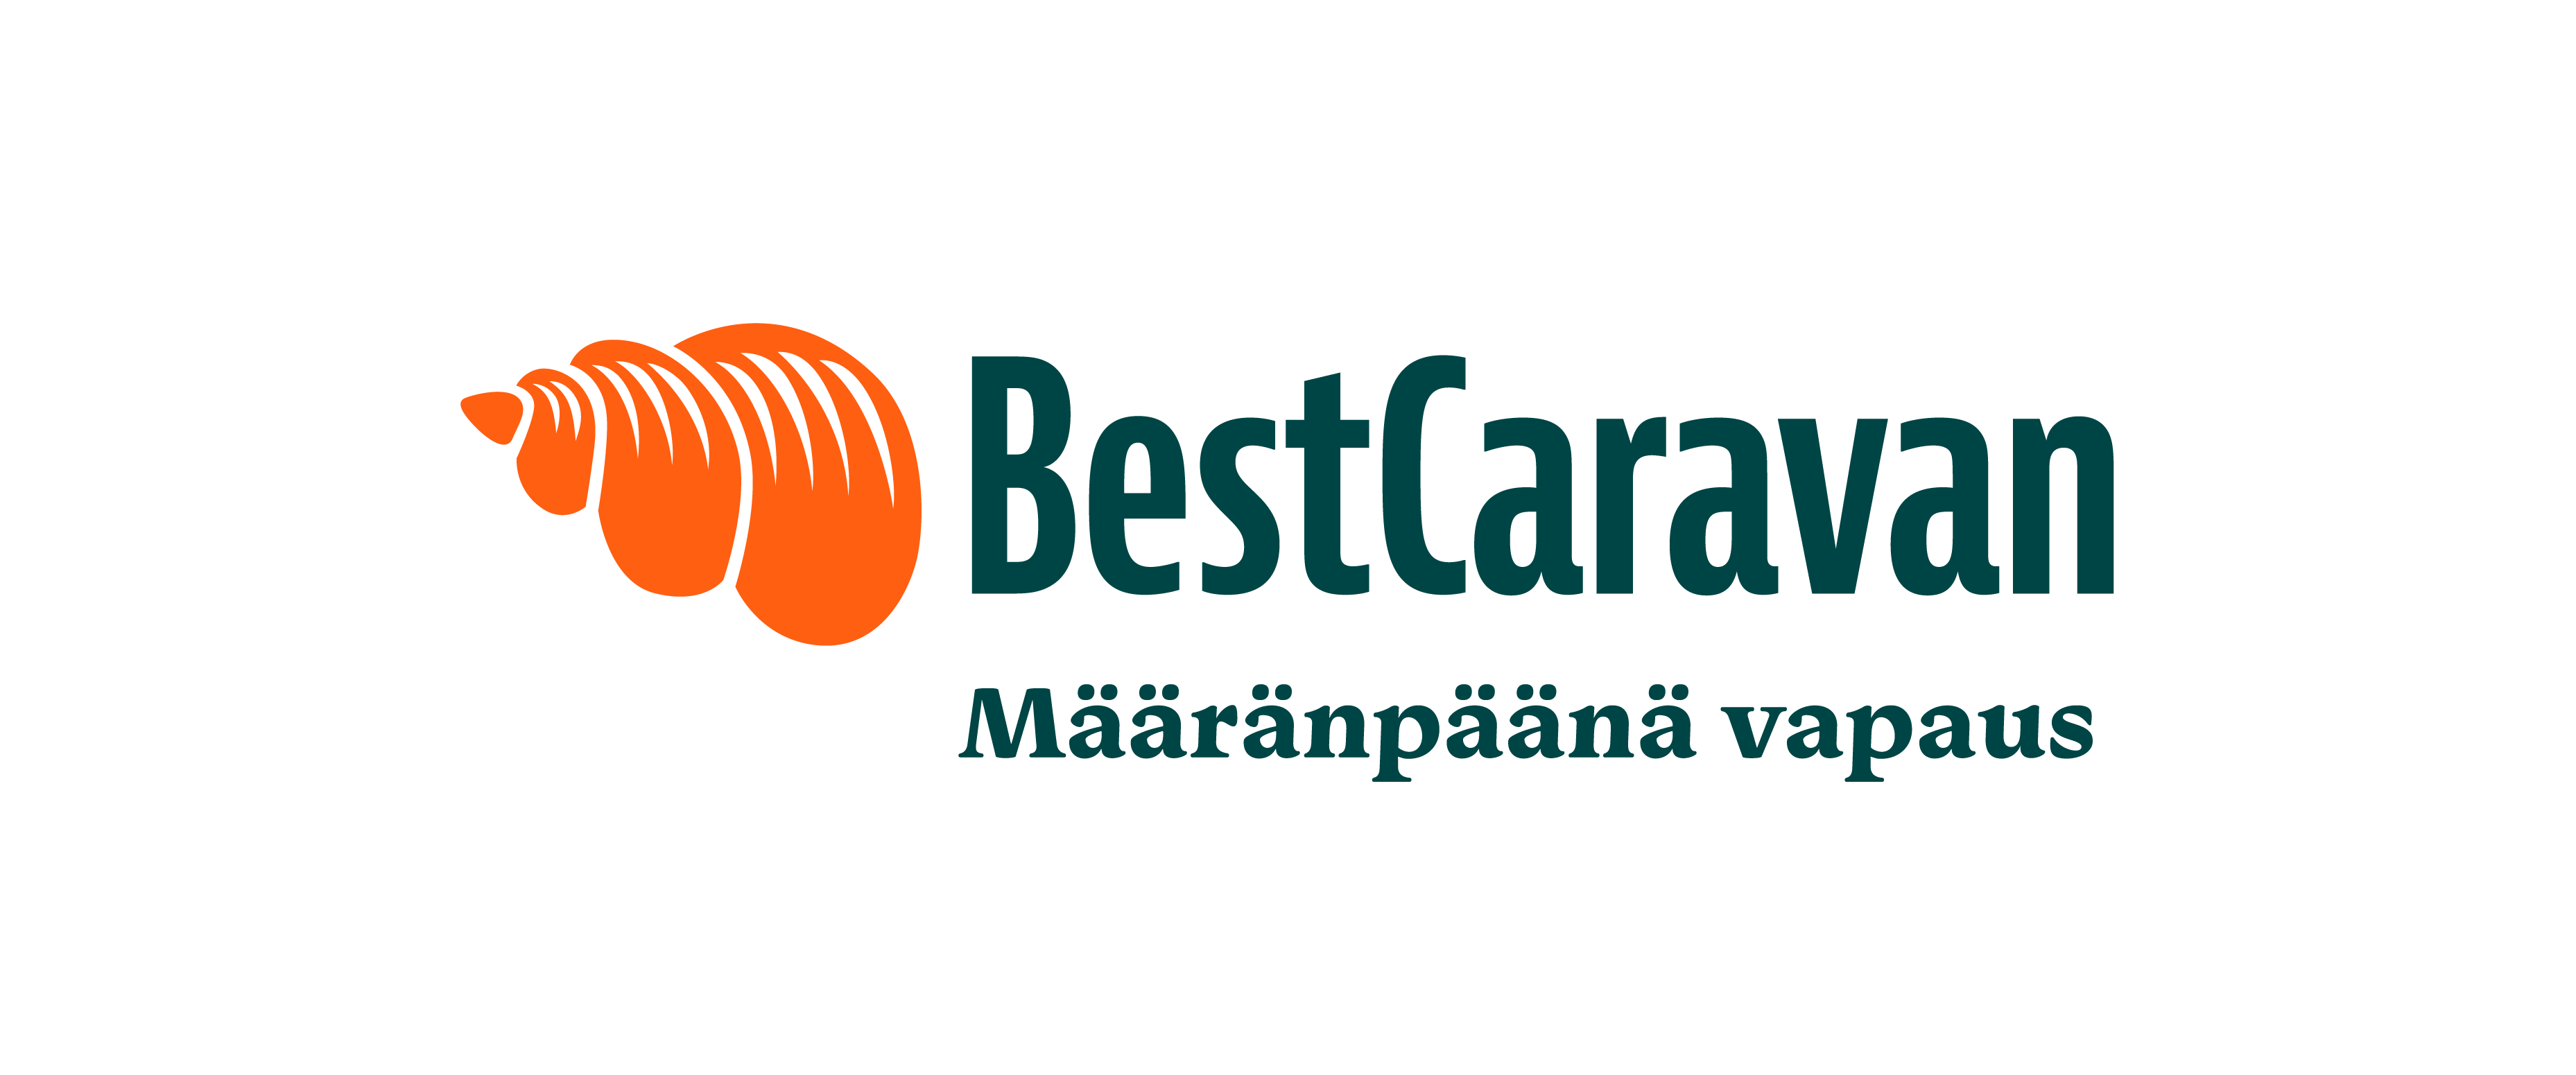 Best Caravan logo uusi